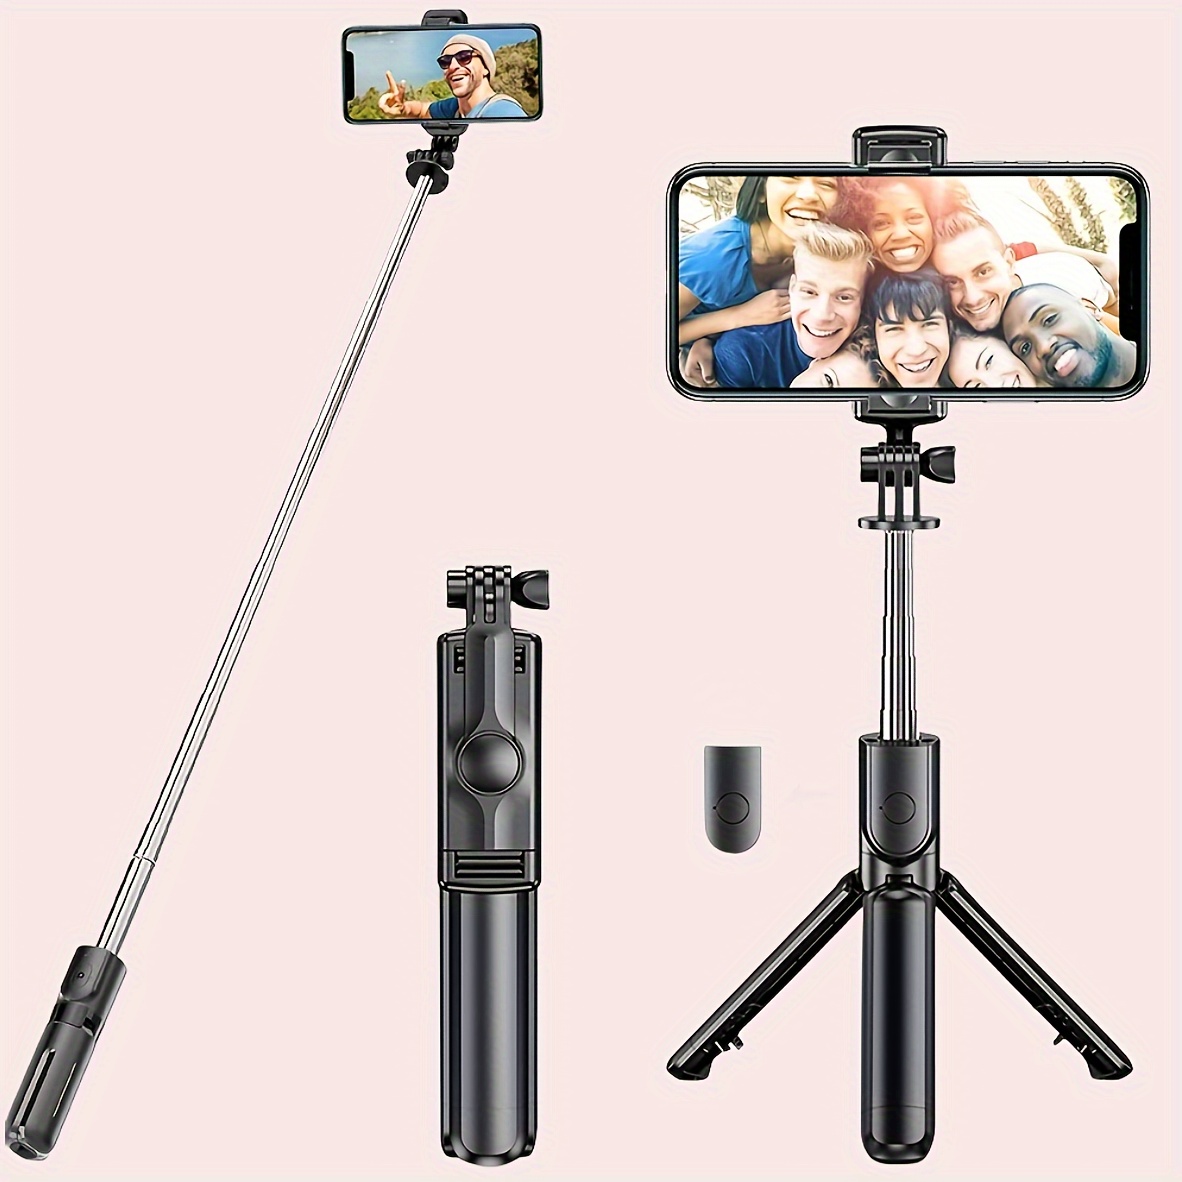 Palo selfie invisible de 1/4 pulgadas con tornillo compatible con Insta360  ONE X3 ONE X2 ONE R, ONE, GO 2 y muchos más